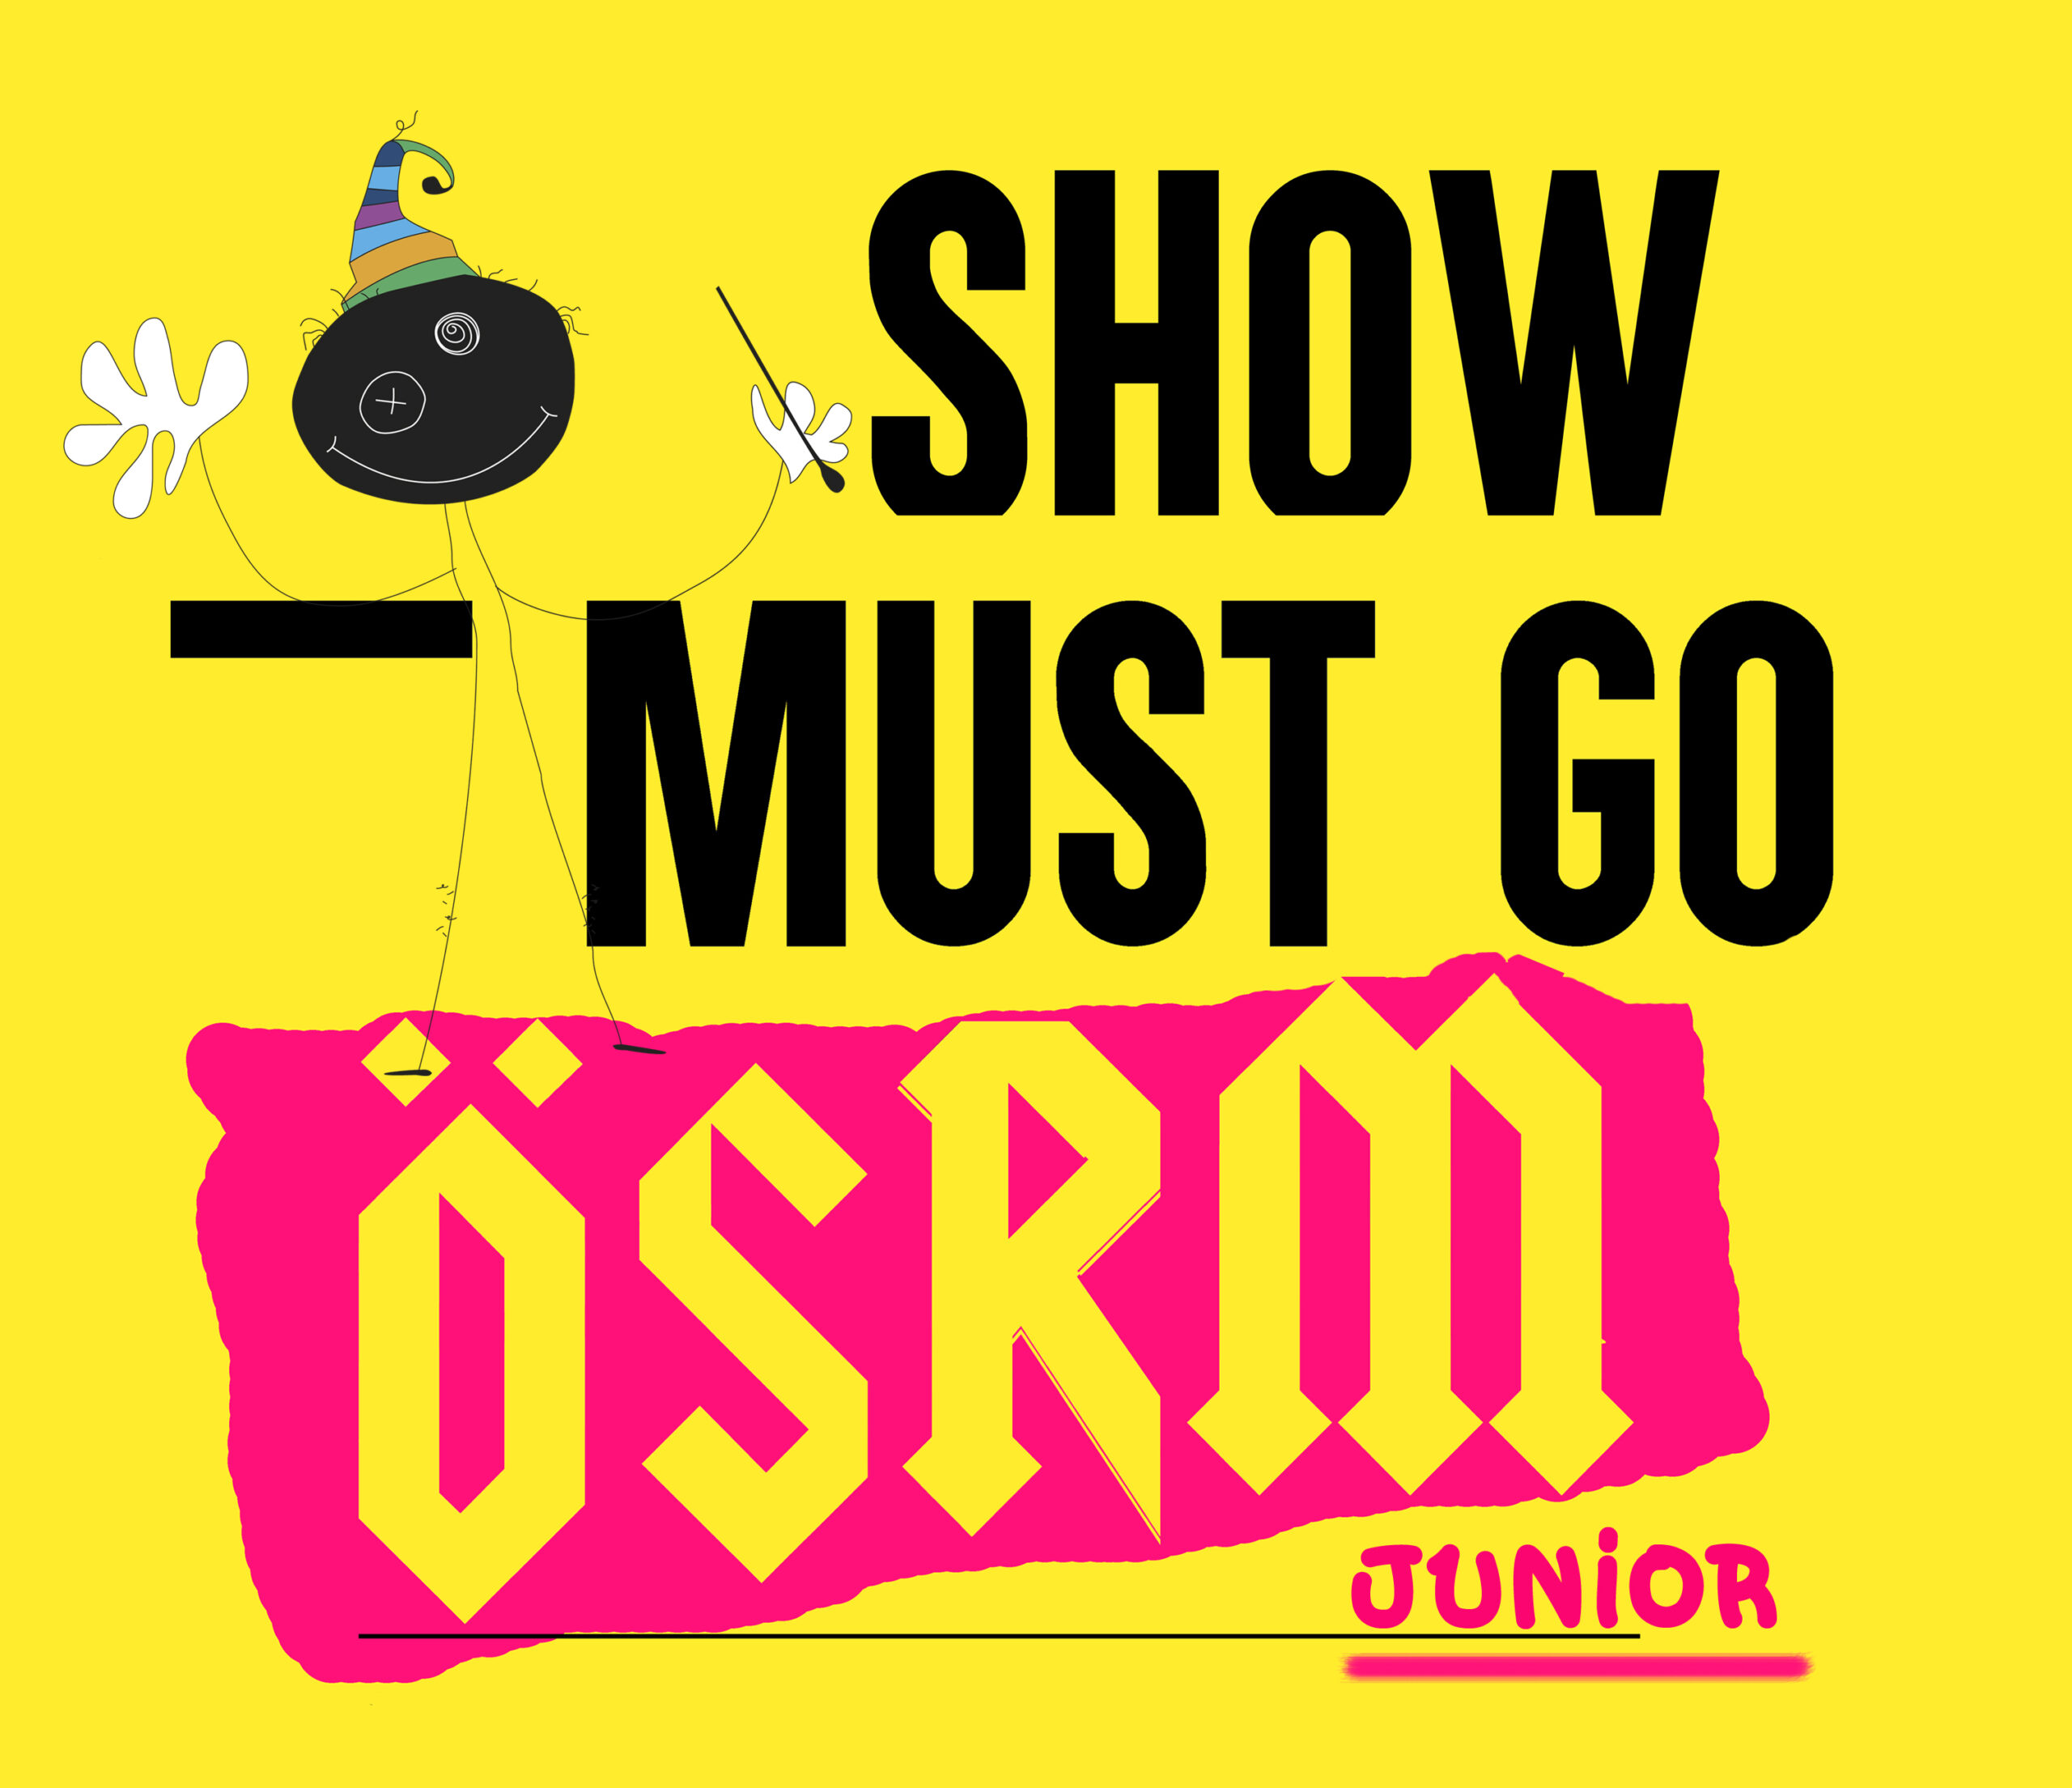 La Orquesta Sinfónica de Murcia presenta ‘Show Must Go OSRM’ en El Batel